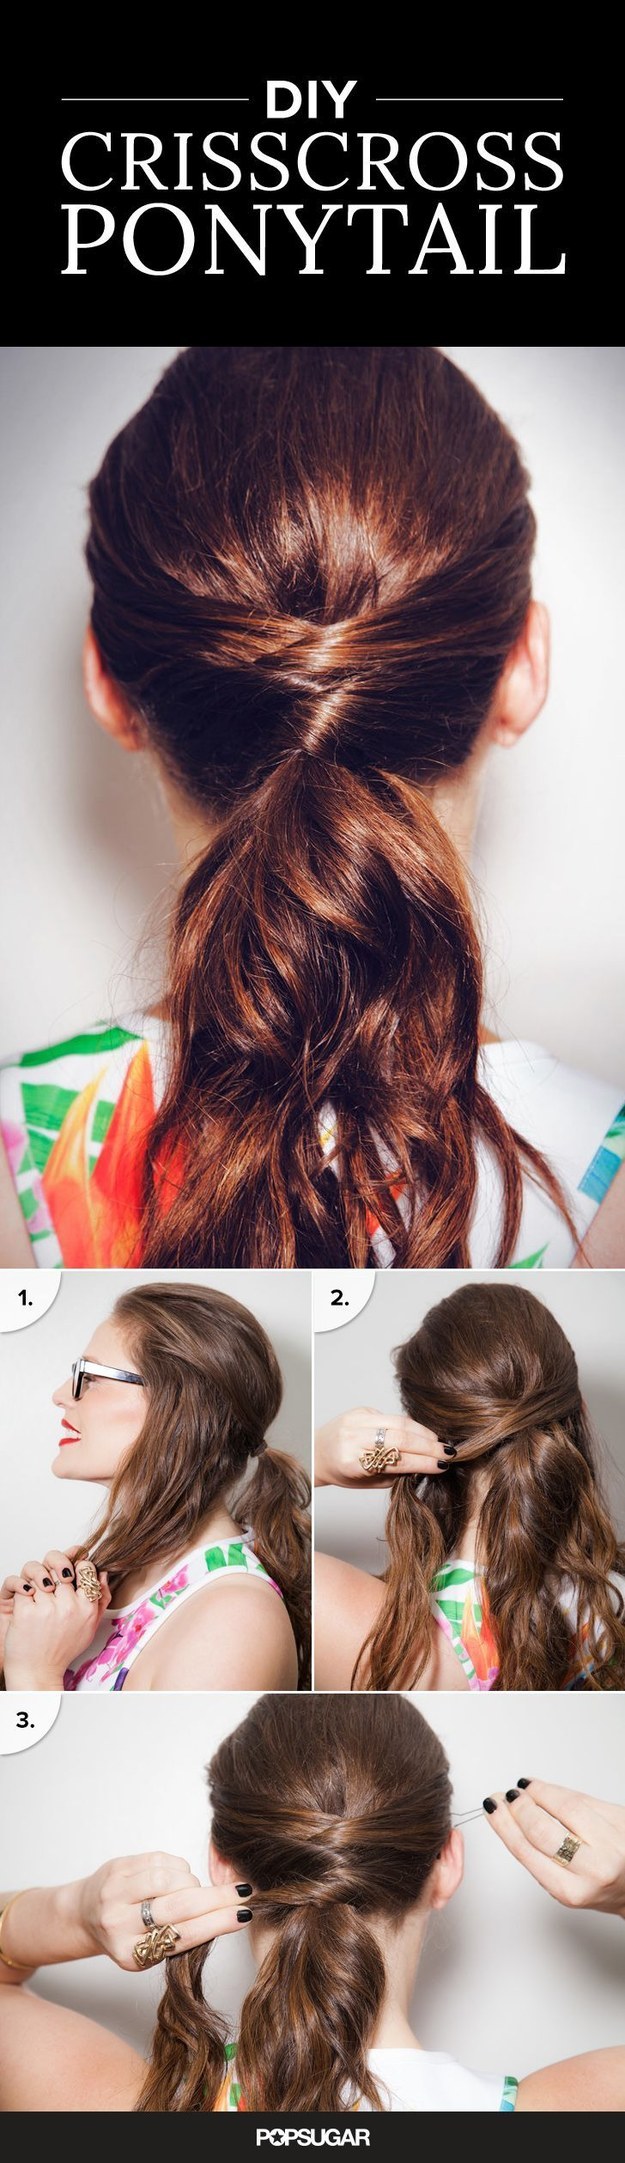 Crisscross ponytail